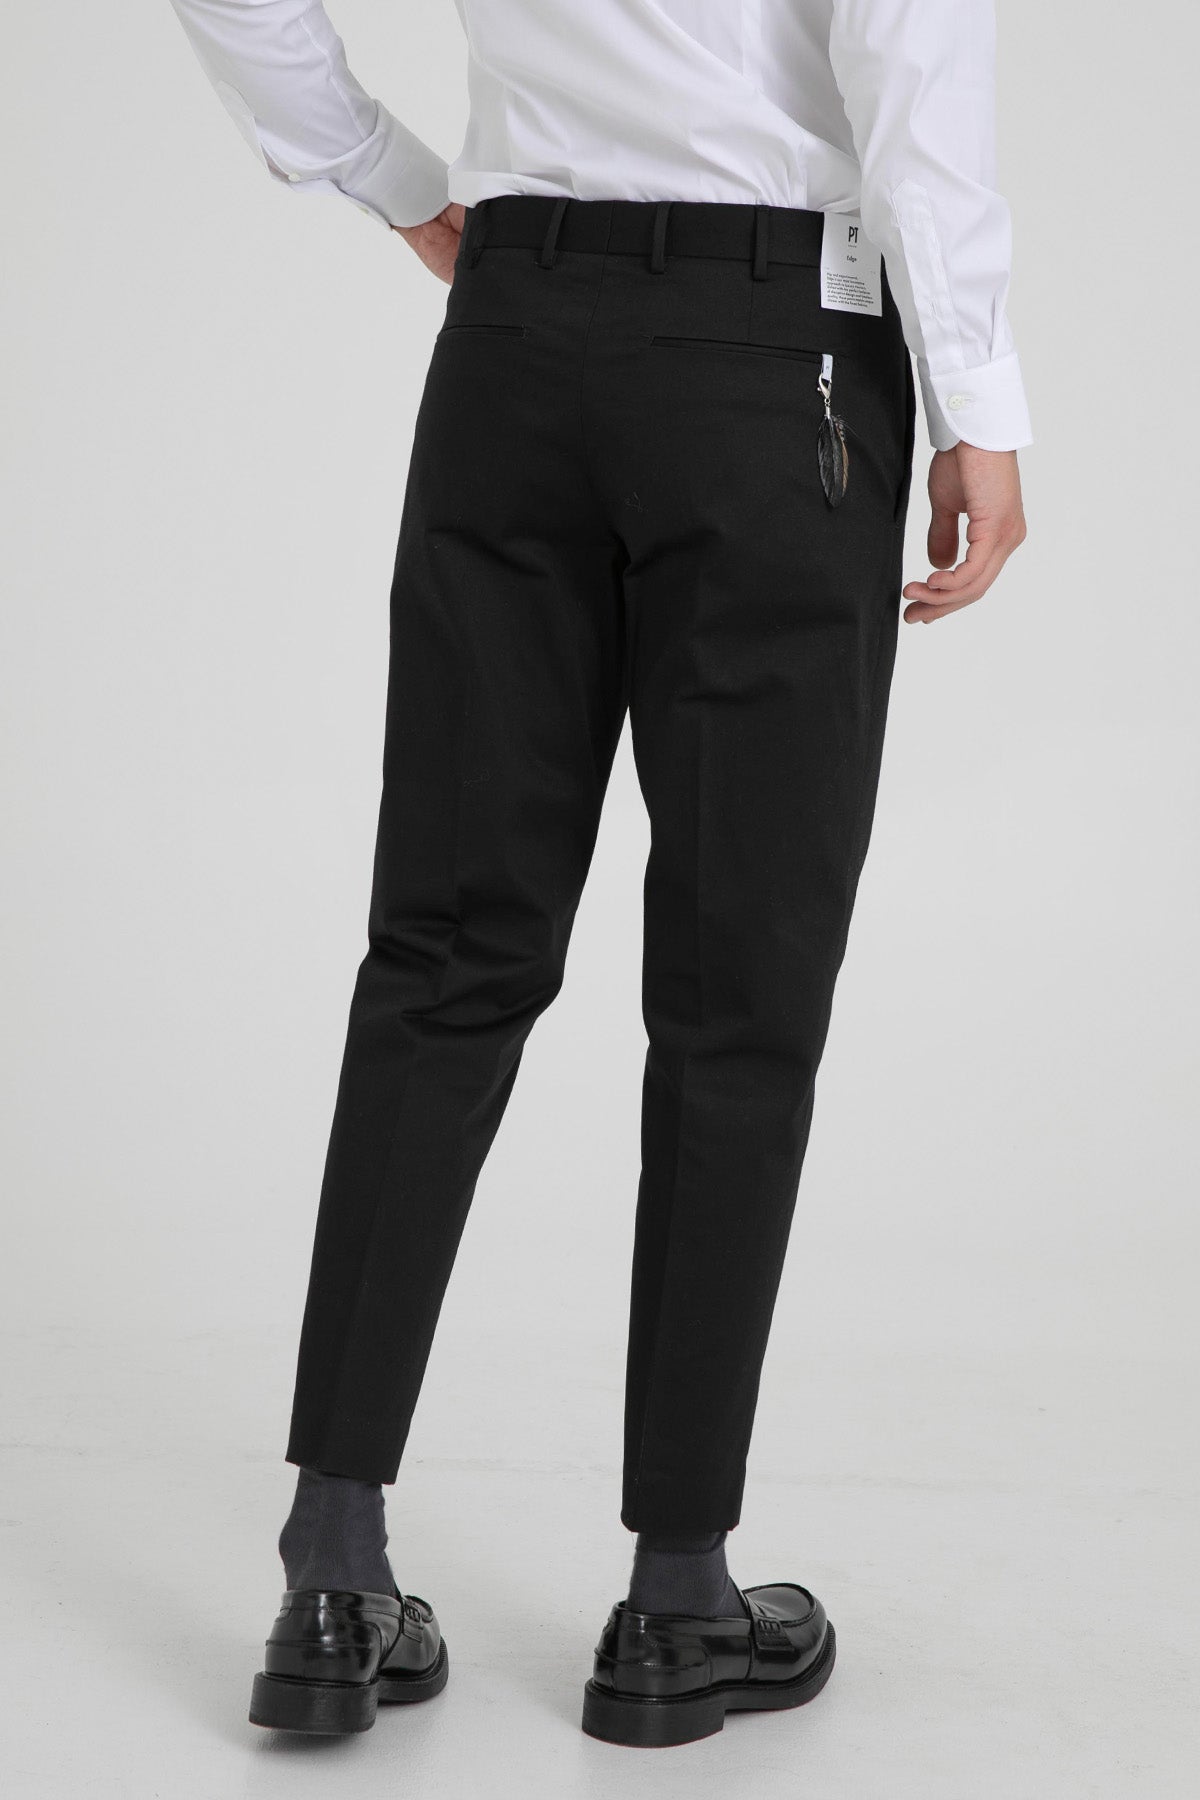 Pantaloni Torino Rebel Fit Yandan Cepli Streç Pantolon-Libas Trendy Fashion Store